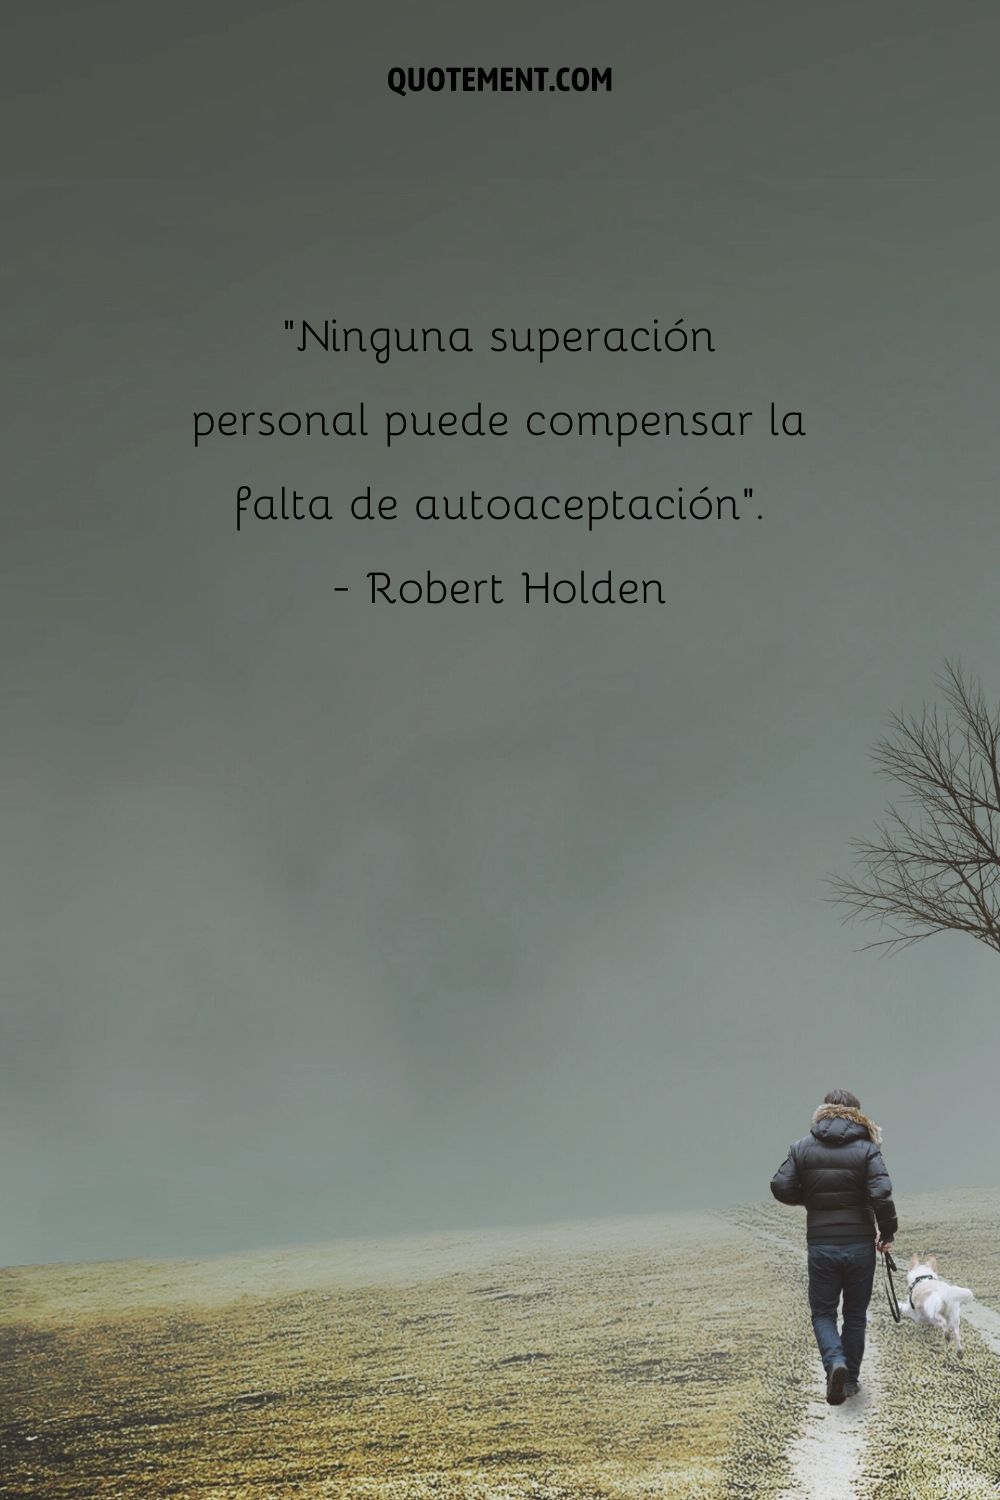 "Ninguna superación personal puede compensar la falta de autoaceptación". - Robert Holden